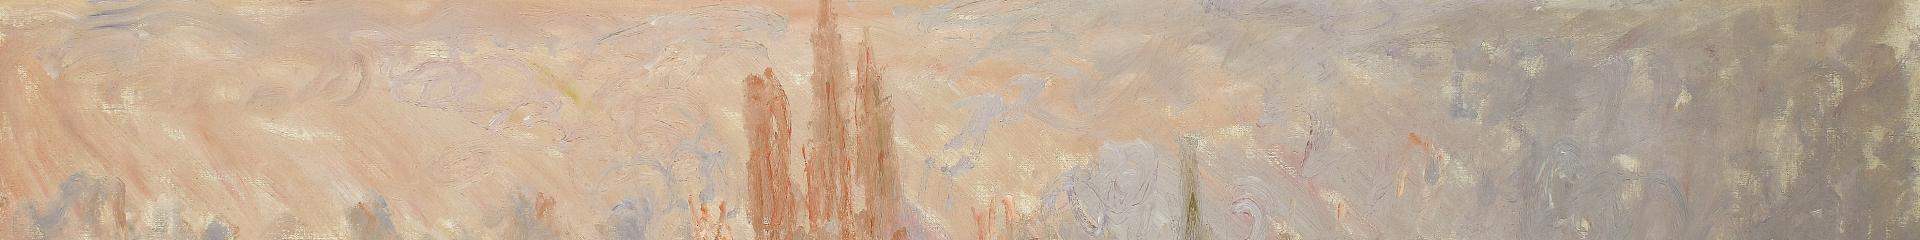 Claude Monet, Vue générale de Rouen, 1892, 60 x 100,5 cm, peinture à l’huile sur toile. © Réunion des Musées Métropolitains Rouen Normandie, Musée des Beaux-Arts